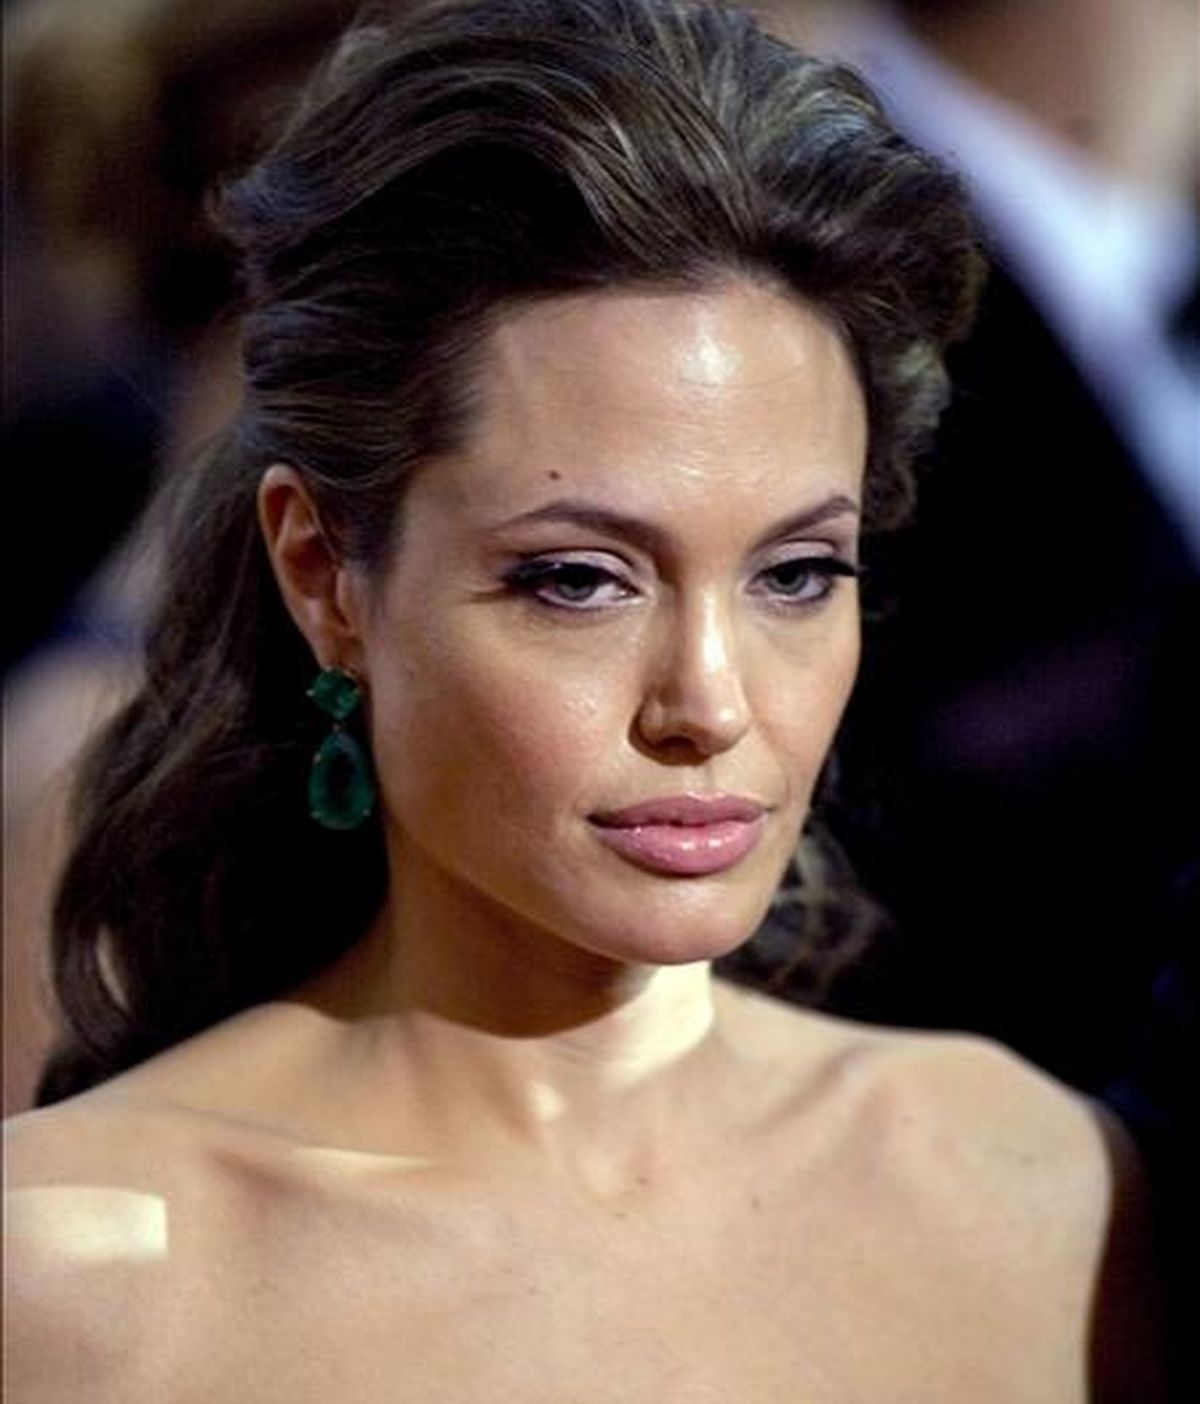 La actriz estadounidense Angelina Jolie aseguró: "No he hecho ninguna épica histórica de esa naturaleza y ella (Cleopatra) siempre ha sido fascinante.". EFE/Archivo